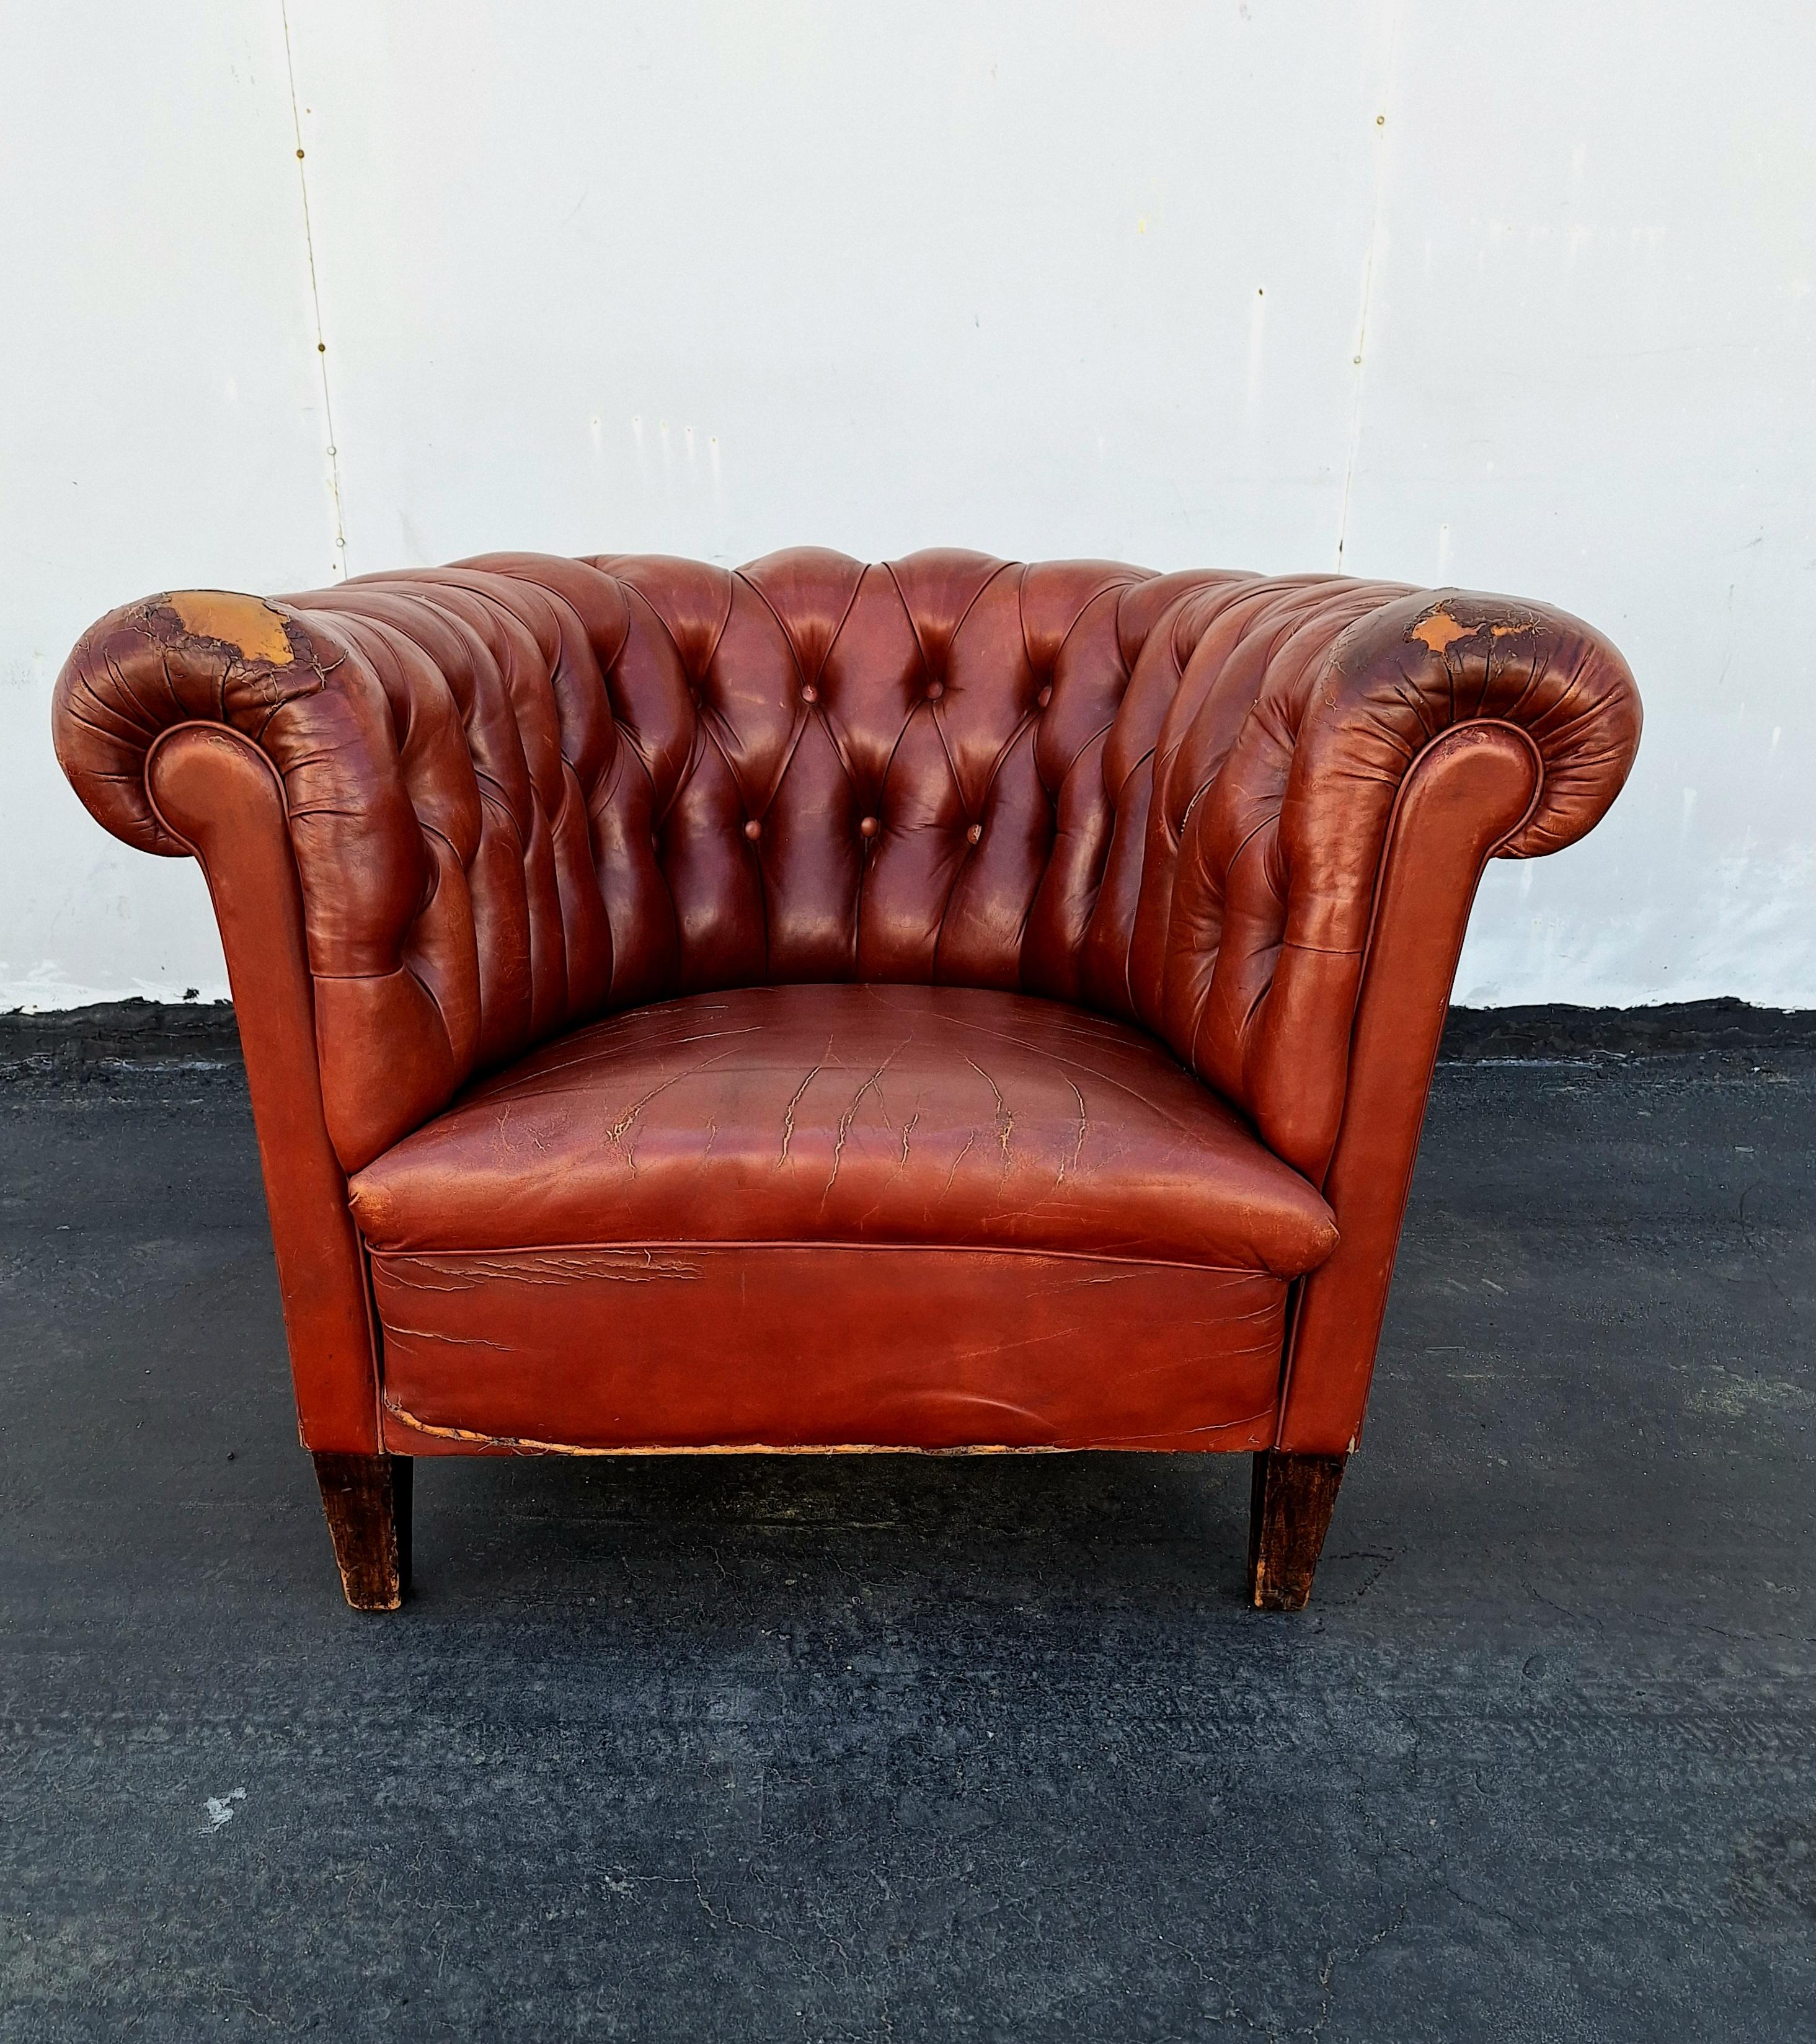 Eine gute Qualität frühen 20. Jahrhundert, braunem Leder Club Sessel Chesterfield. Original handgefärbt  braunes Leder. Dieser Cesterfield ist mit Rosshaar gefüllt und mit Knöpfen gepolstert. Er steht auf Holzbeinen mit einer wunderschönen Patina